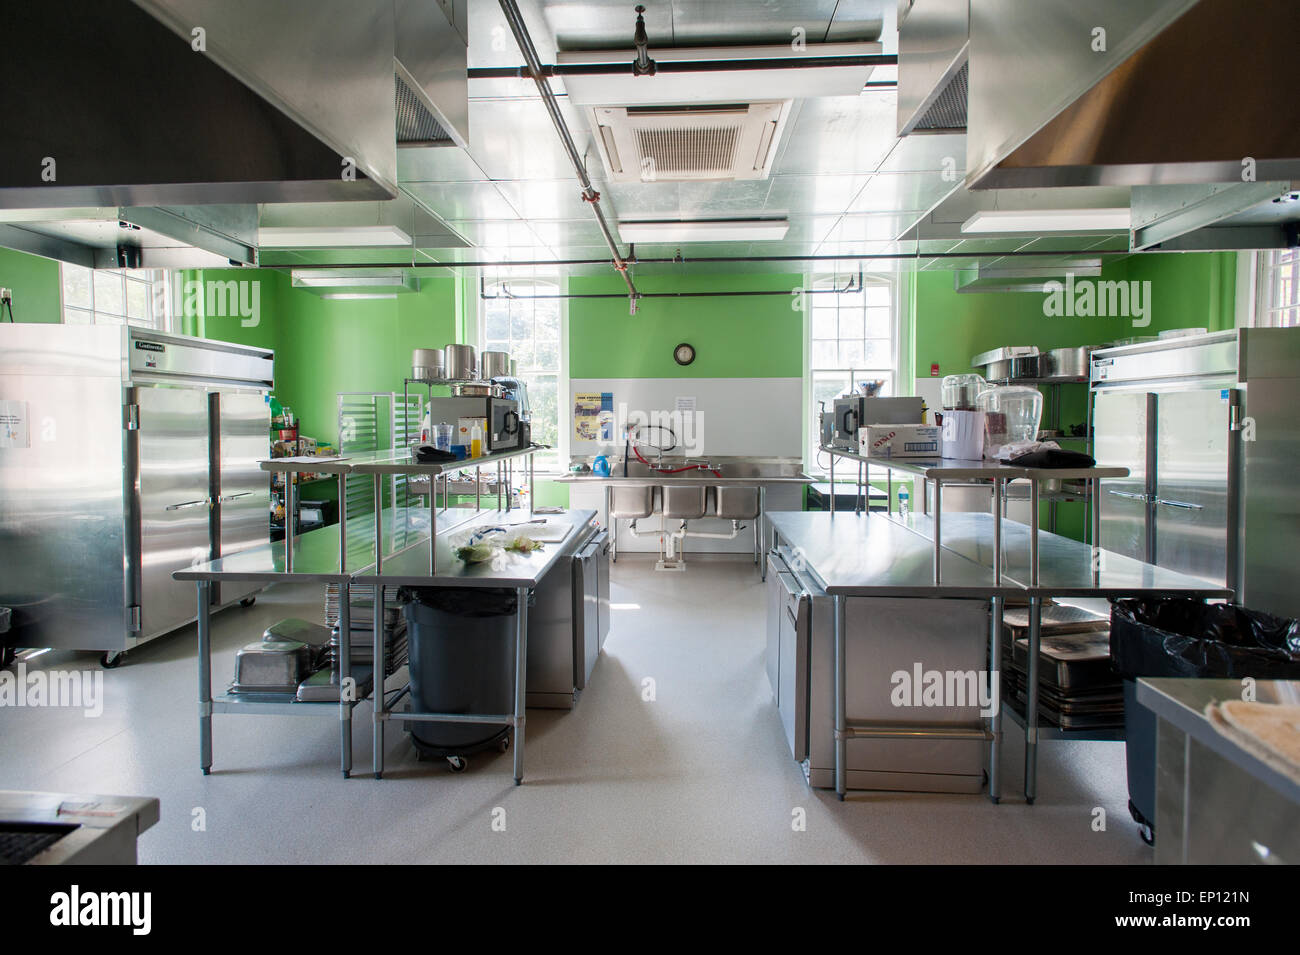 Cocina institucional con paredes pintadas de color verde brillante y accesorios de acero inoxidable en Denton, Maryland, EE.UU. Foto de stock